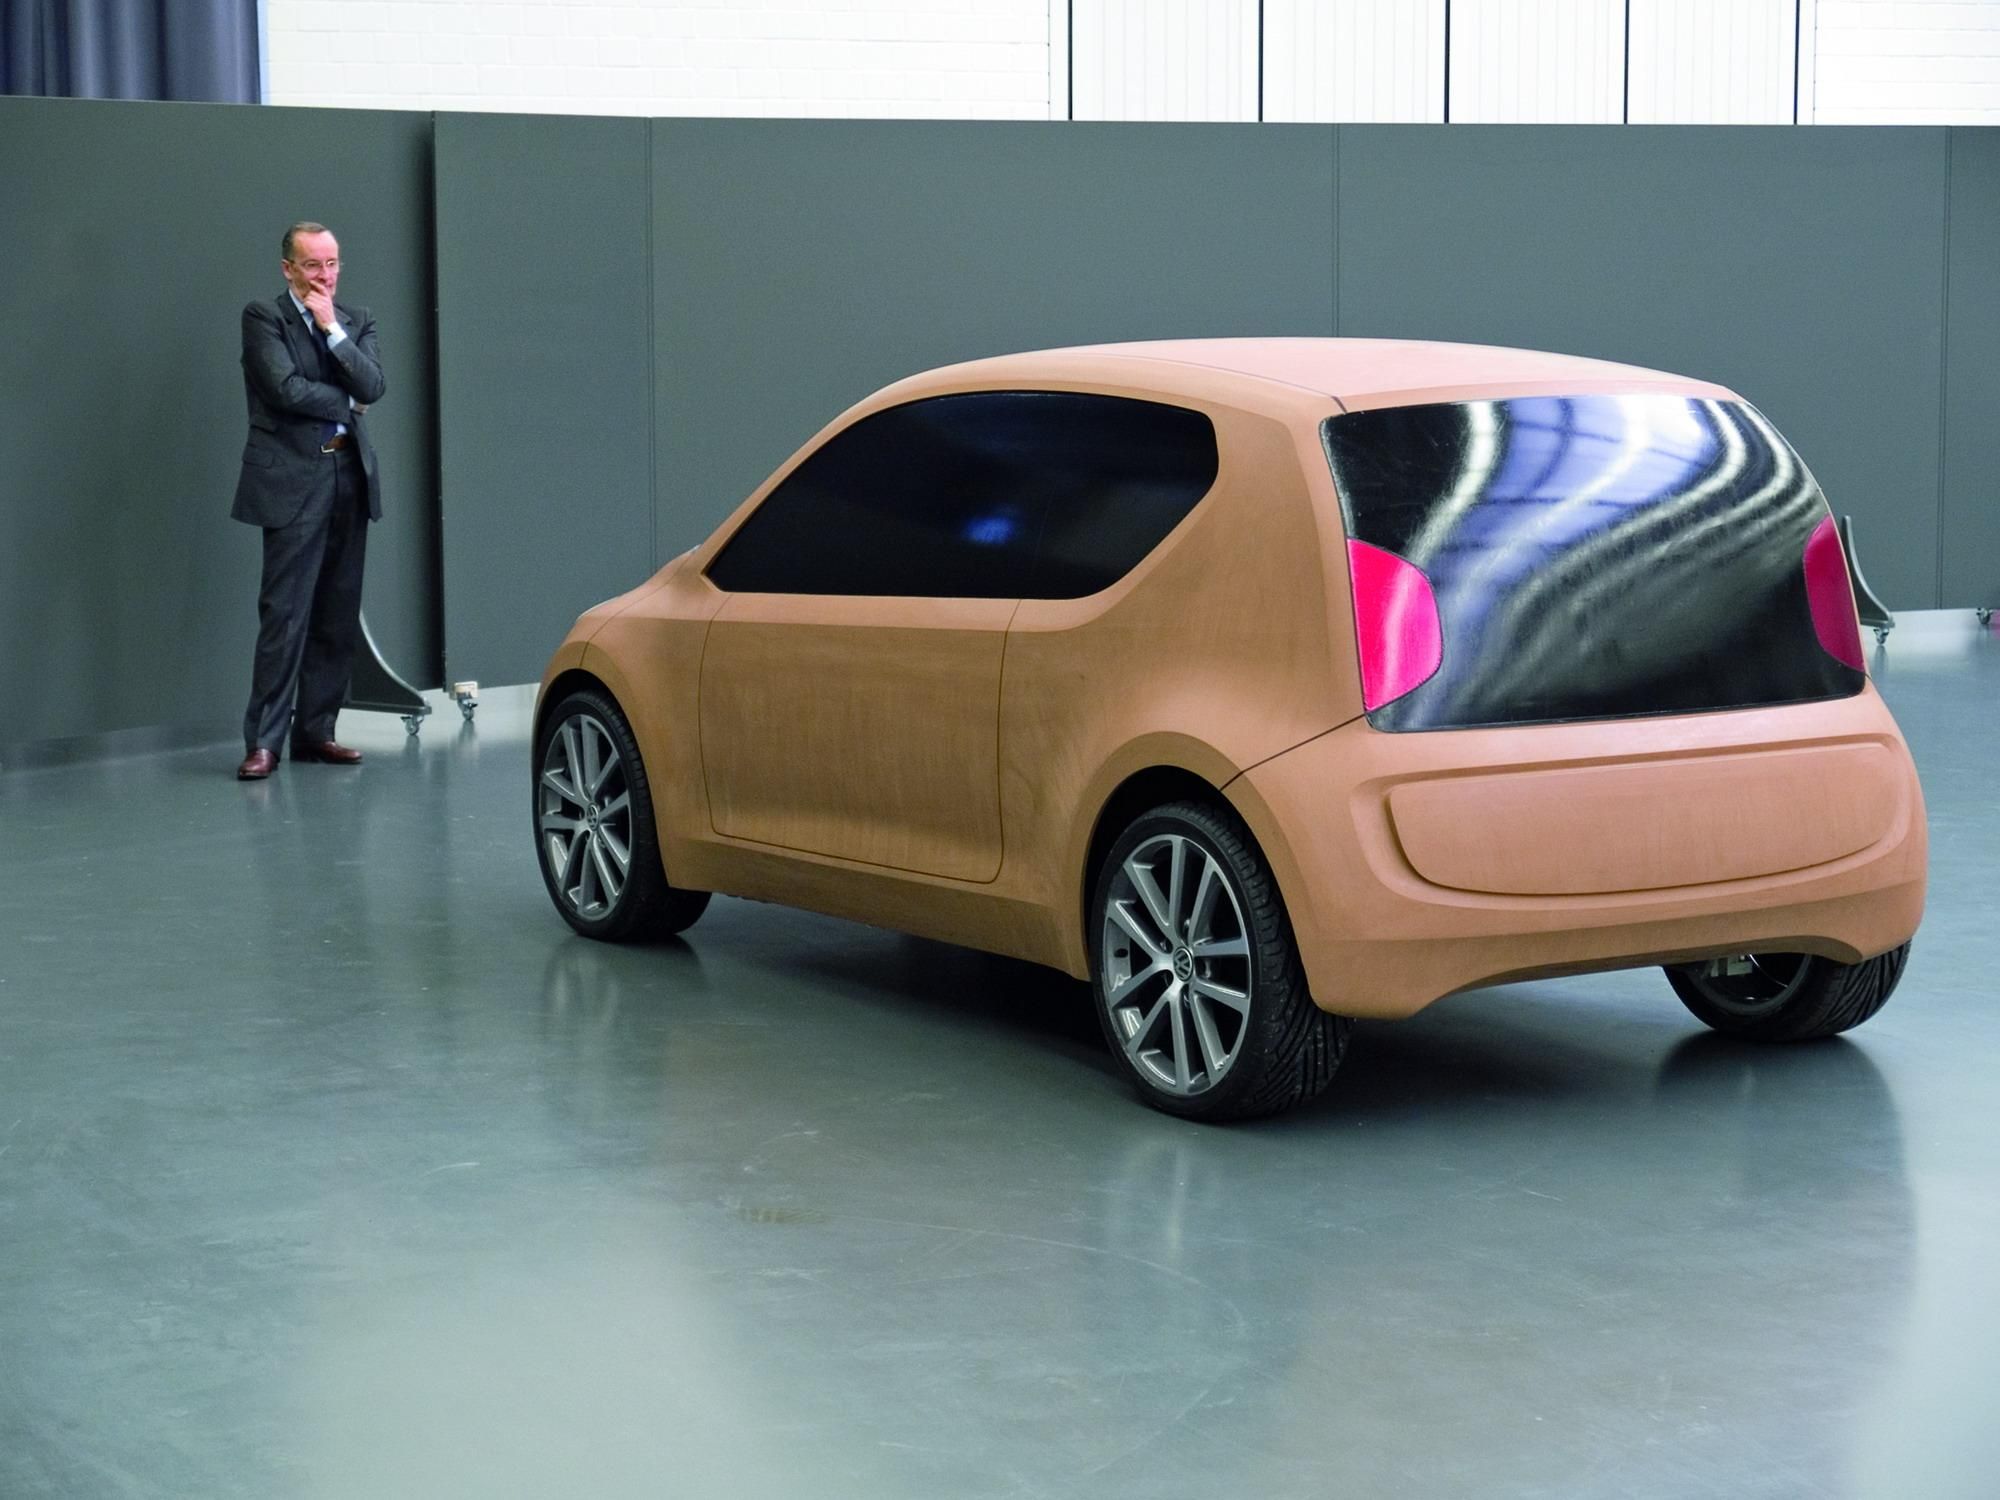 2007 Volkswagen Up! concept car